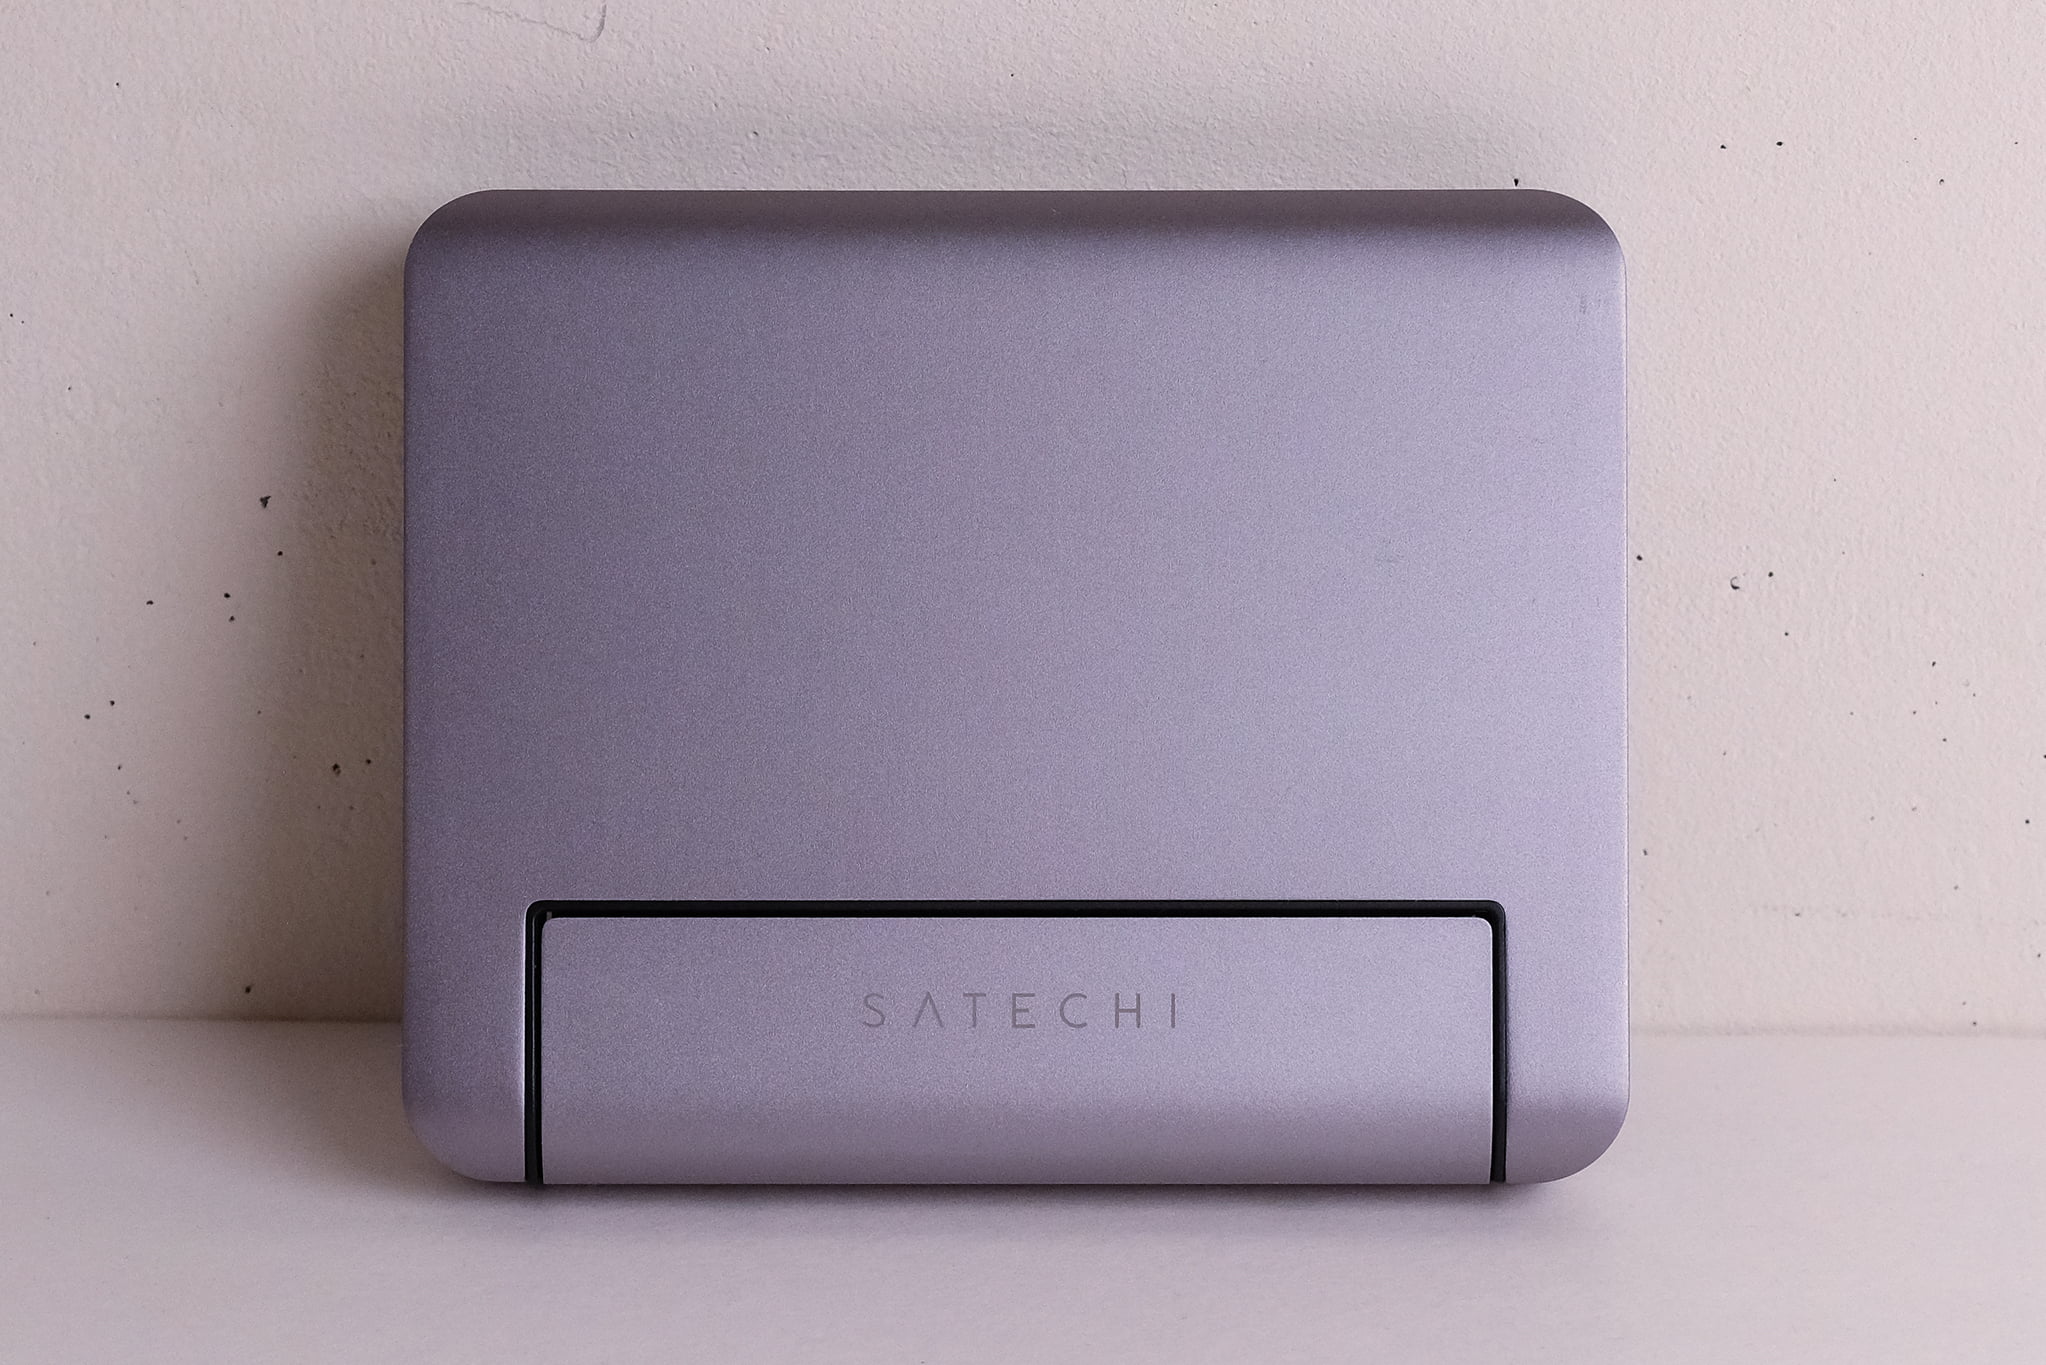 SATECHI
iPad Pro/Air用 アルミニウム スタンド＆ハブは折りたたみスタンドであり、ハブにもなる優れモノ。ではなぜ、SATECHIのiPad用 アルミニウム スタンド＆ハブを購入したのか。